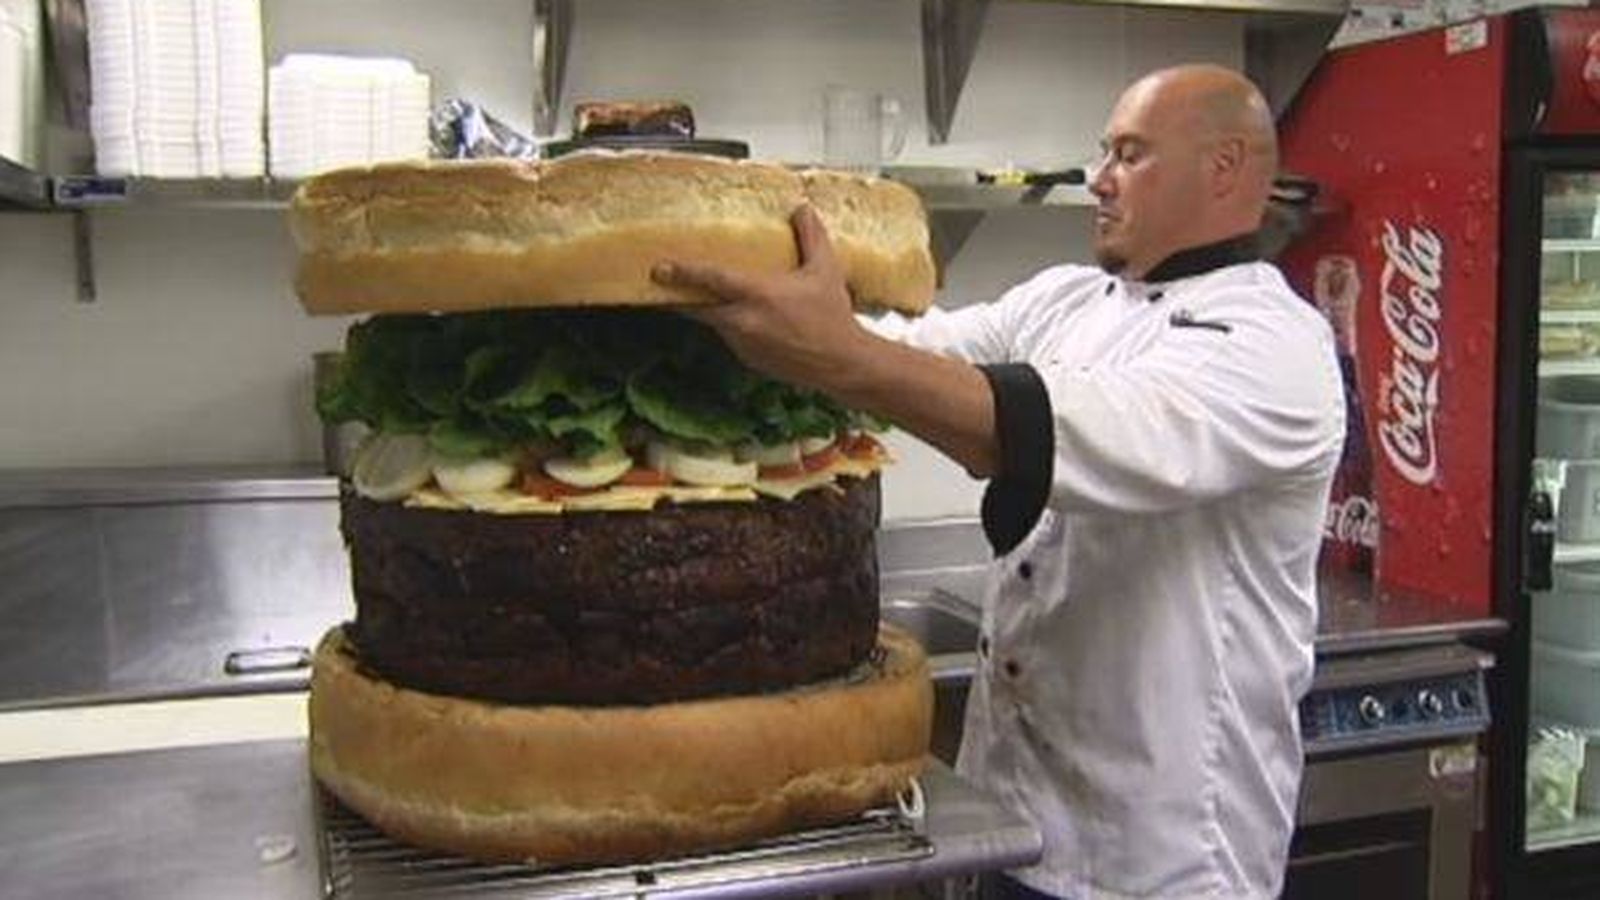 asi-era-la-hamburguesa-mas-grande-del-mundo-hasta-2012-74-kilos-y-399-dolares.jpg